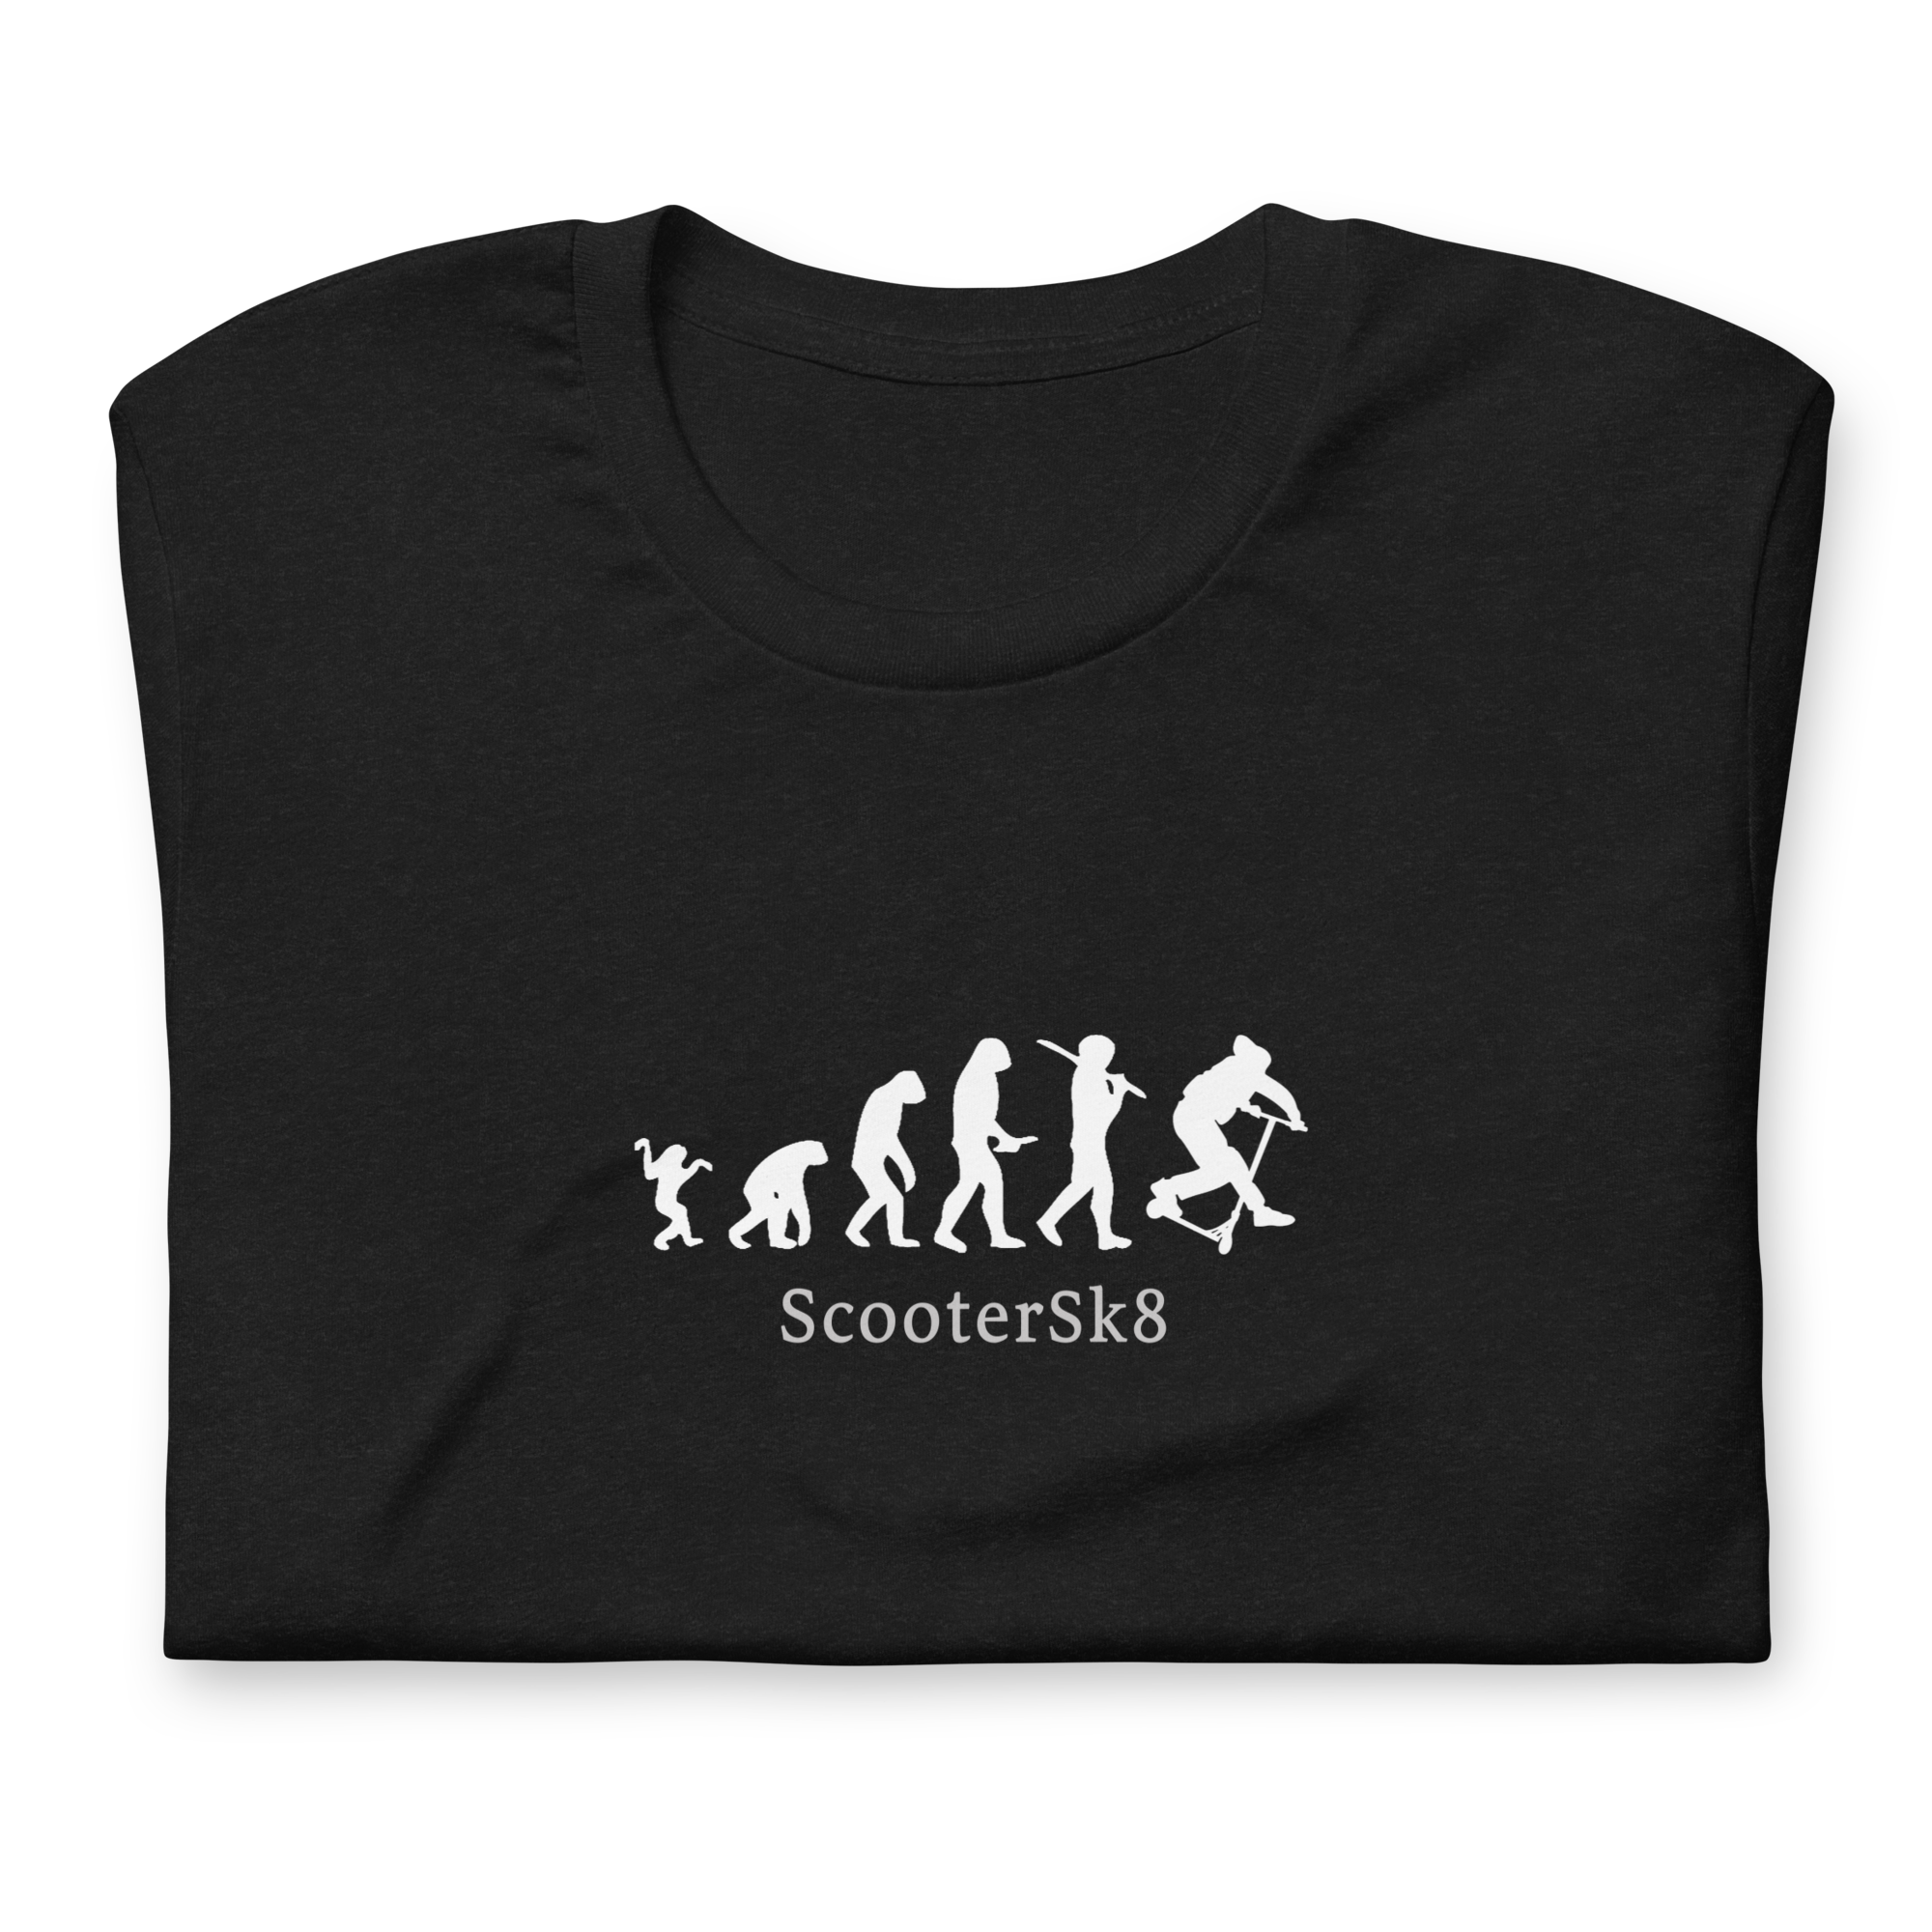 T-shirt Scootersk8 Evolution